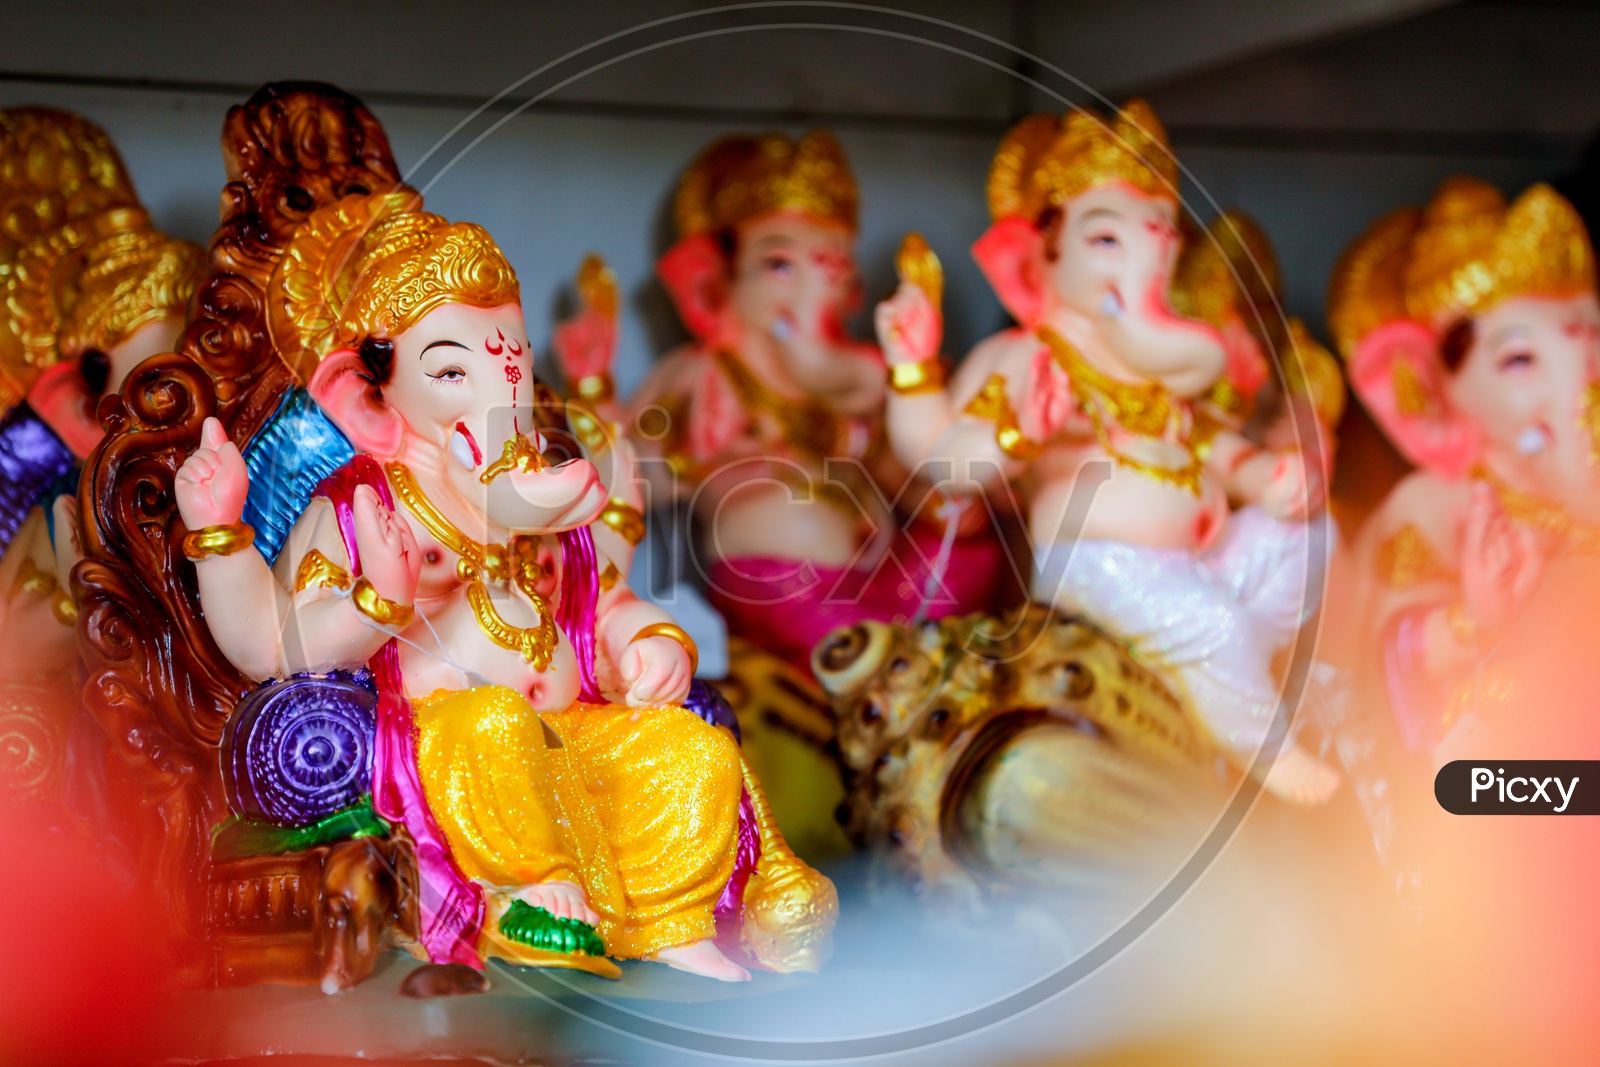 Lord Ganesh Idol / Ganesha Idols placed in a sequence